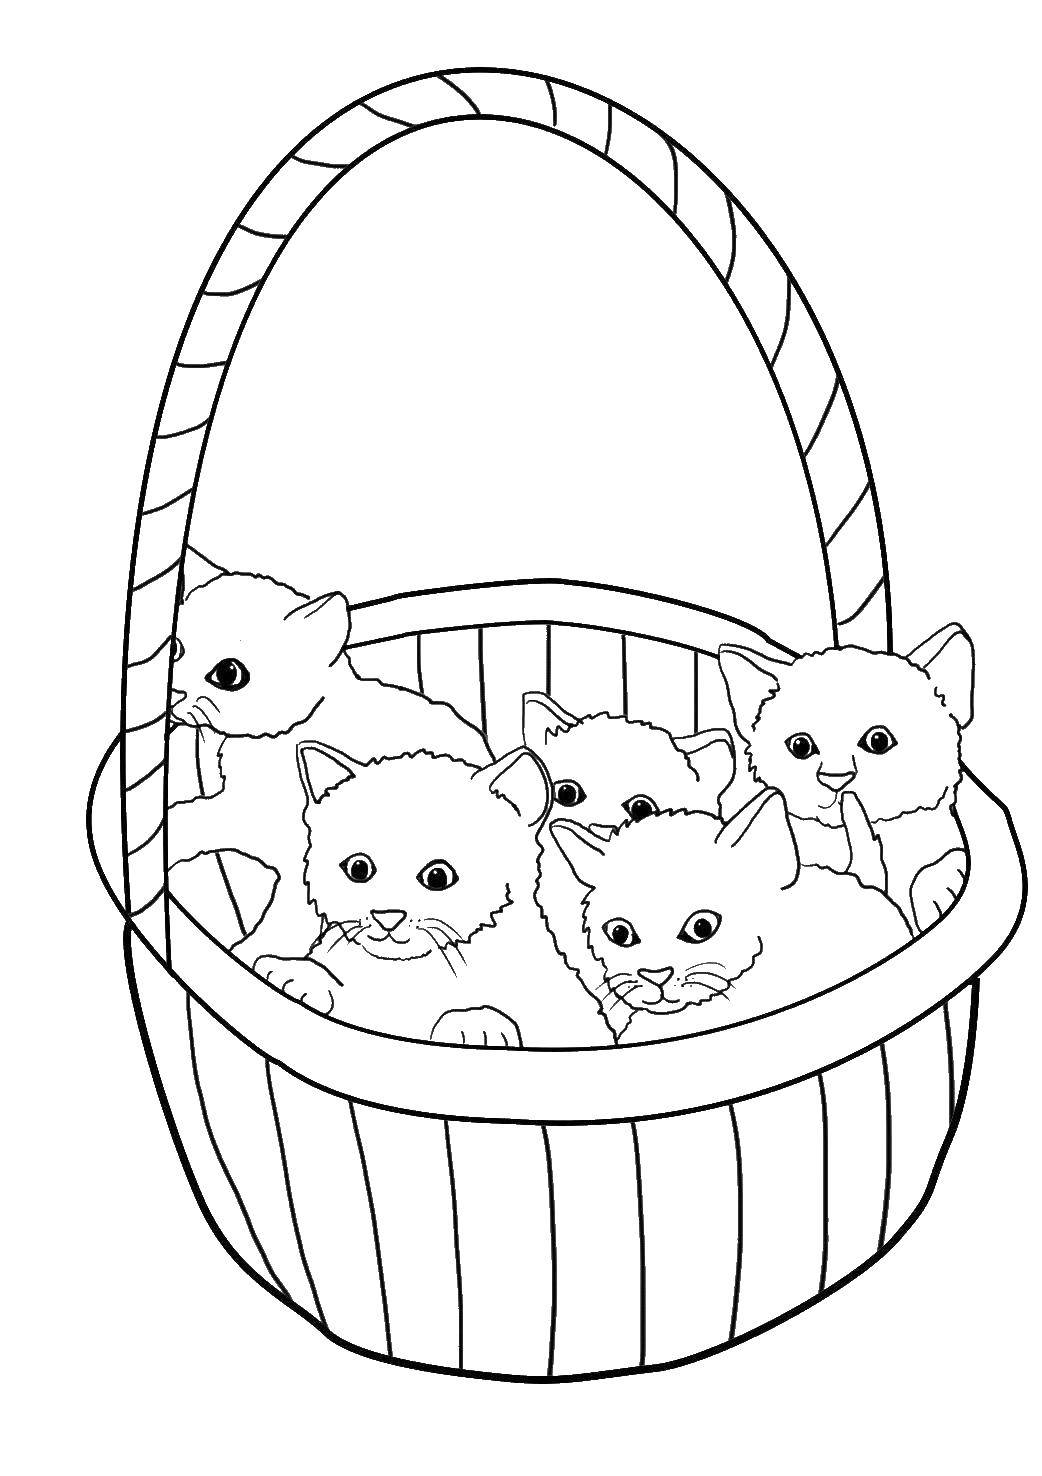 Раскраски для детей с котами и котятами, животными и корзинкой (коты, котята, корзинка)